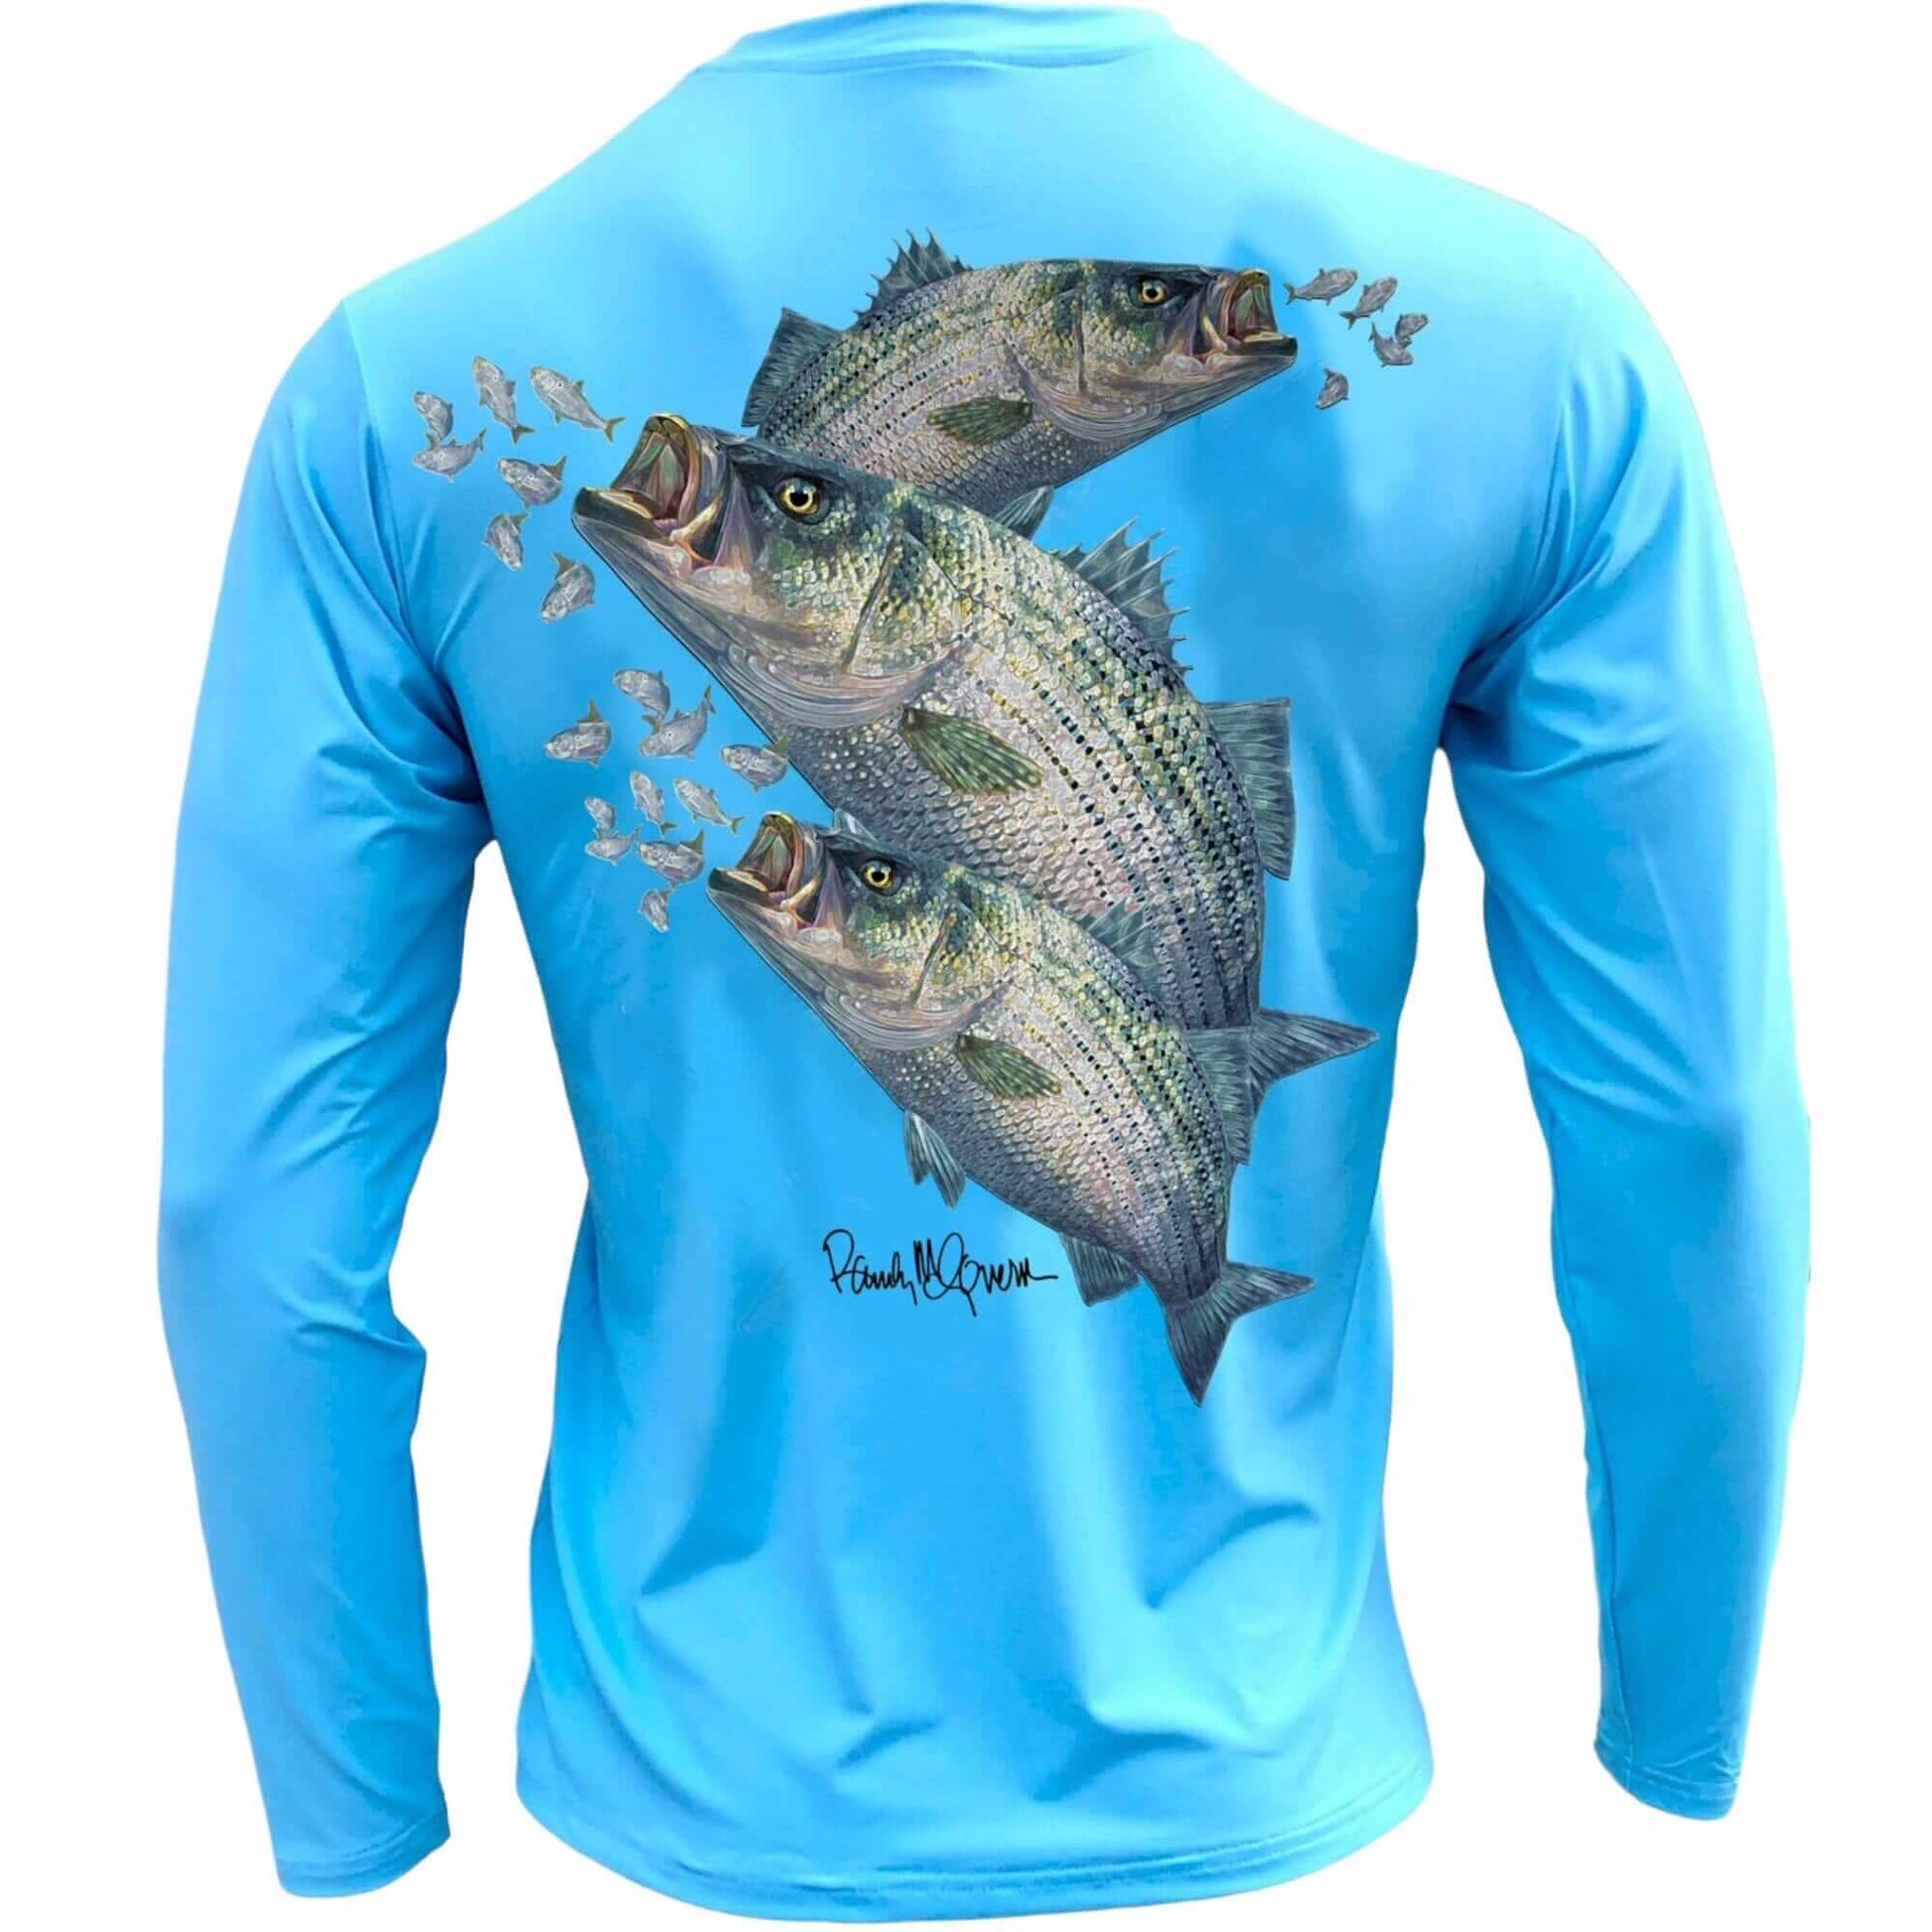 Men's Performance Shirt- Electrified Bass Men's SPF Ocean Fishing Tops Tormenter Ocean Blue S 